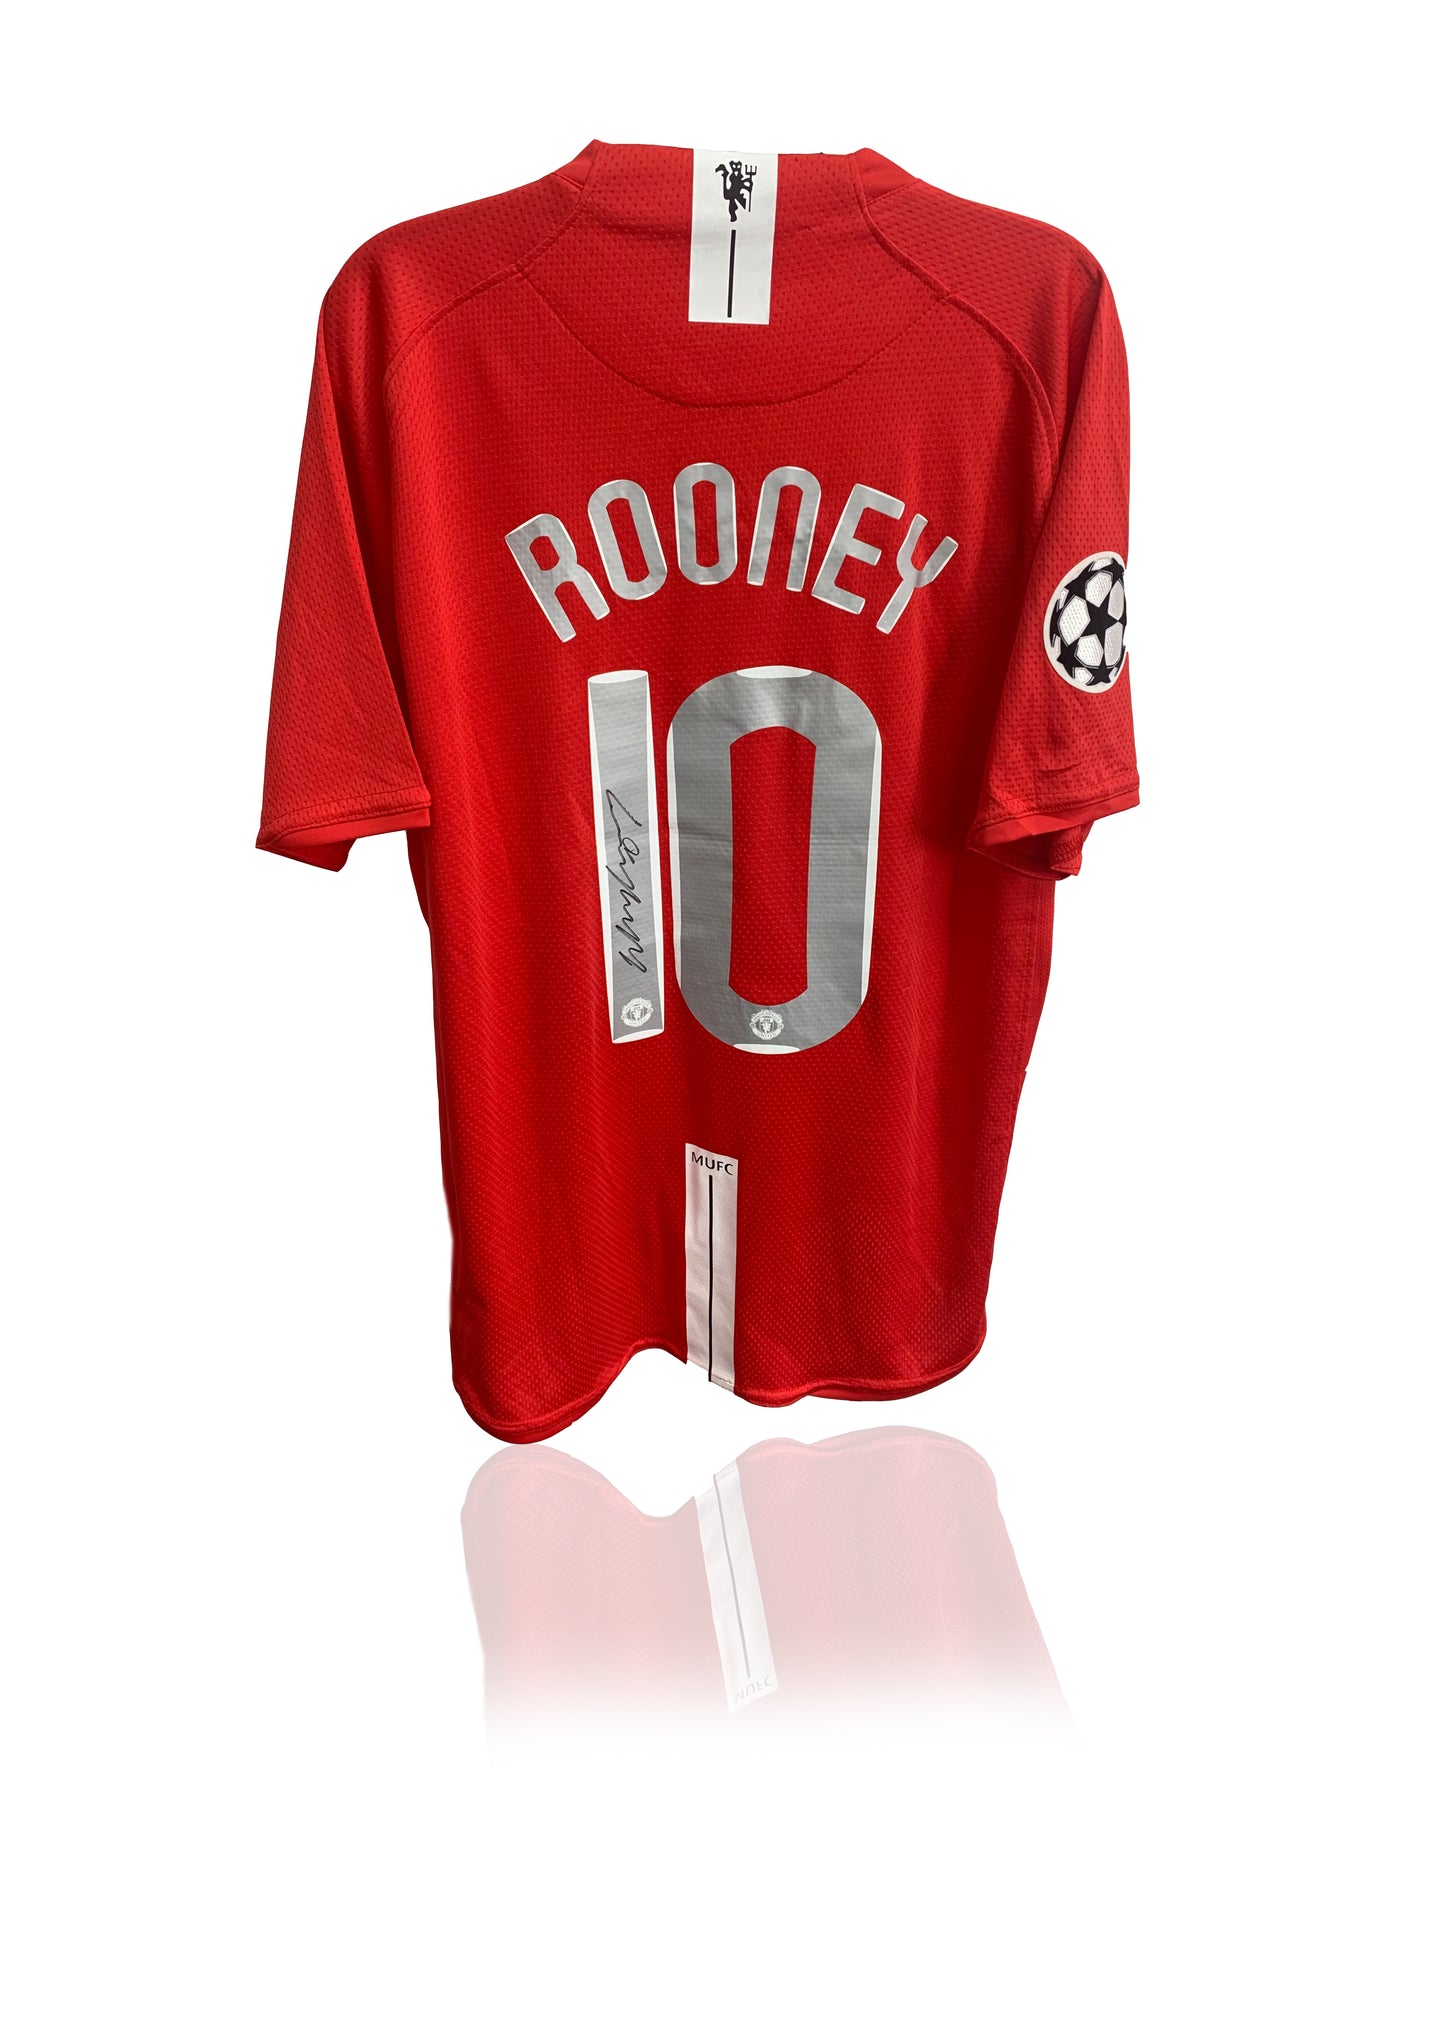 Wayne Rooney signed 2008 Manchester United shirt